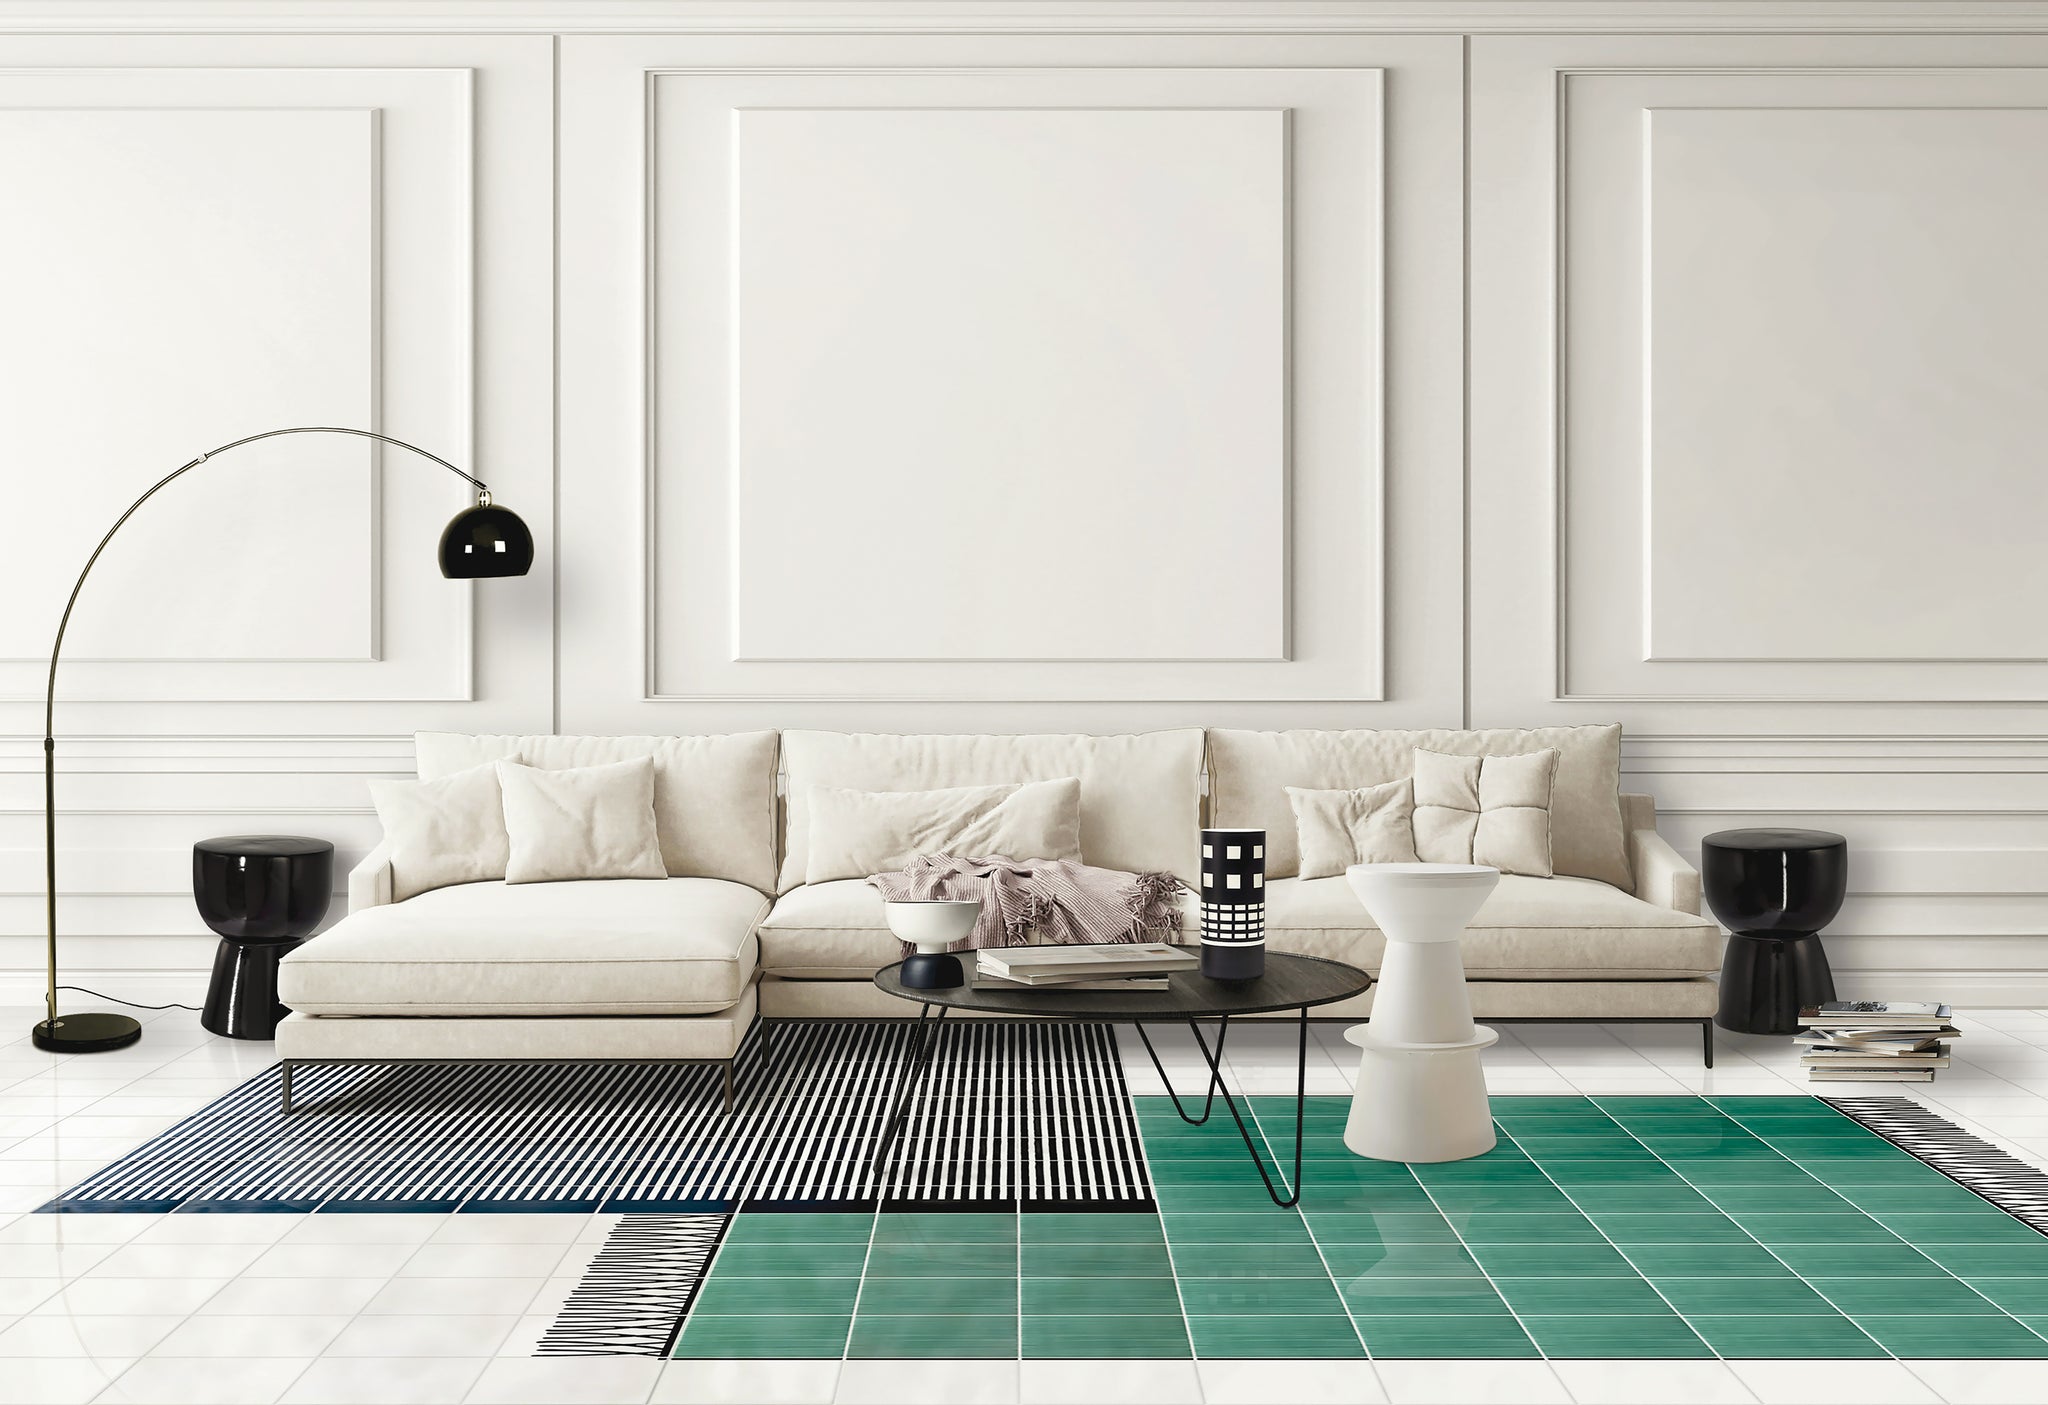 Carpet Green and Black & White Ceramic Composition by Giuliano Andrea dell’Uva 160 x 80 - Alternative view 1